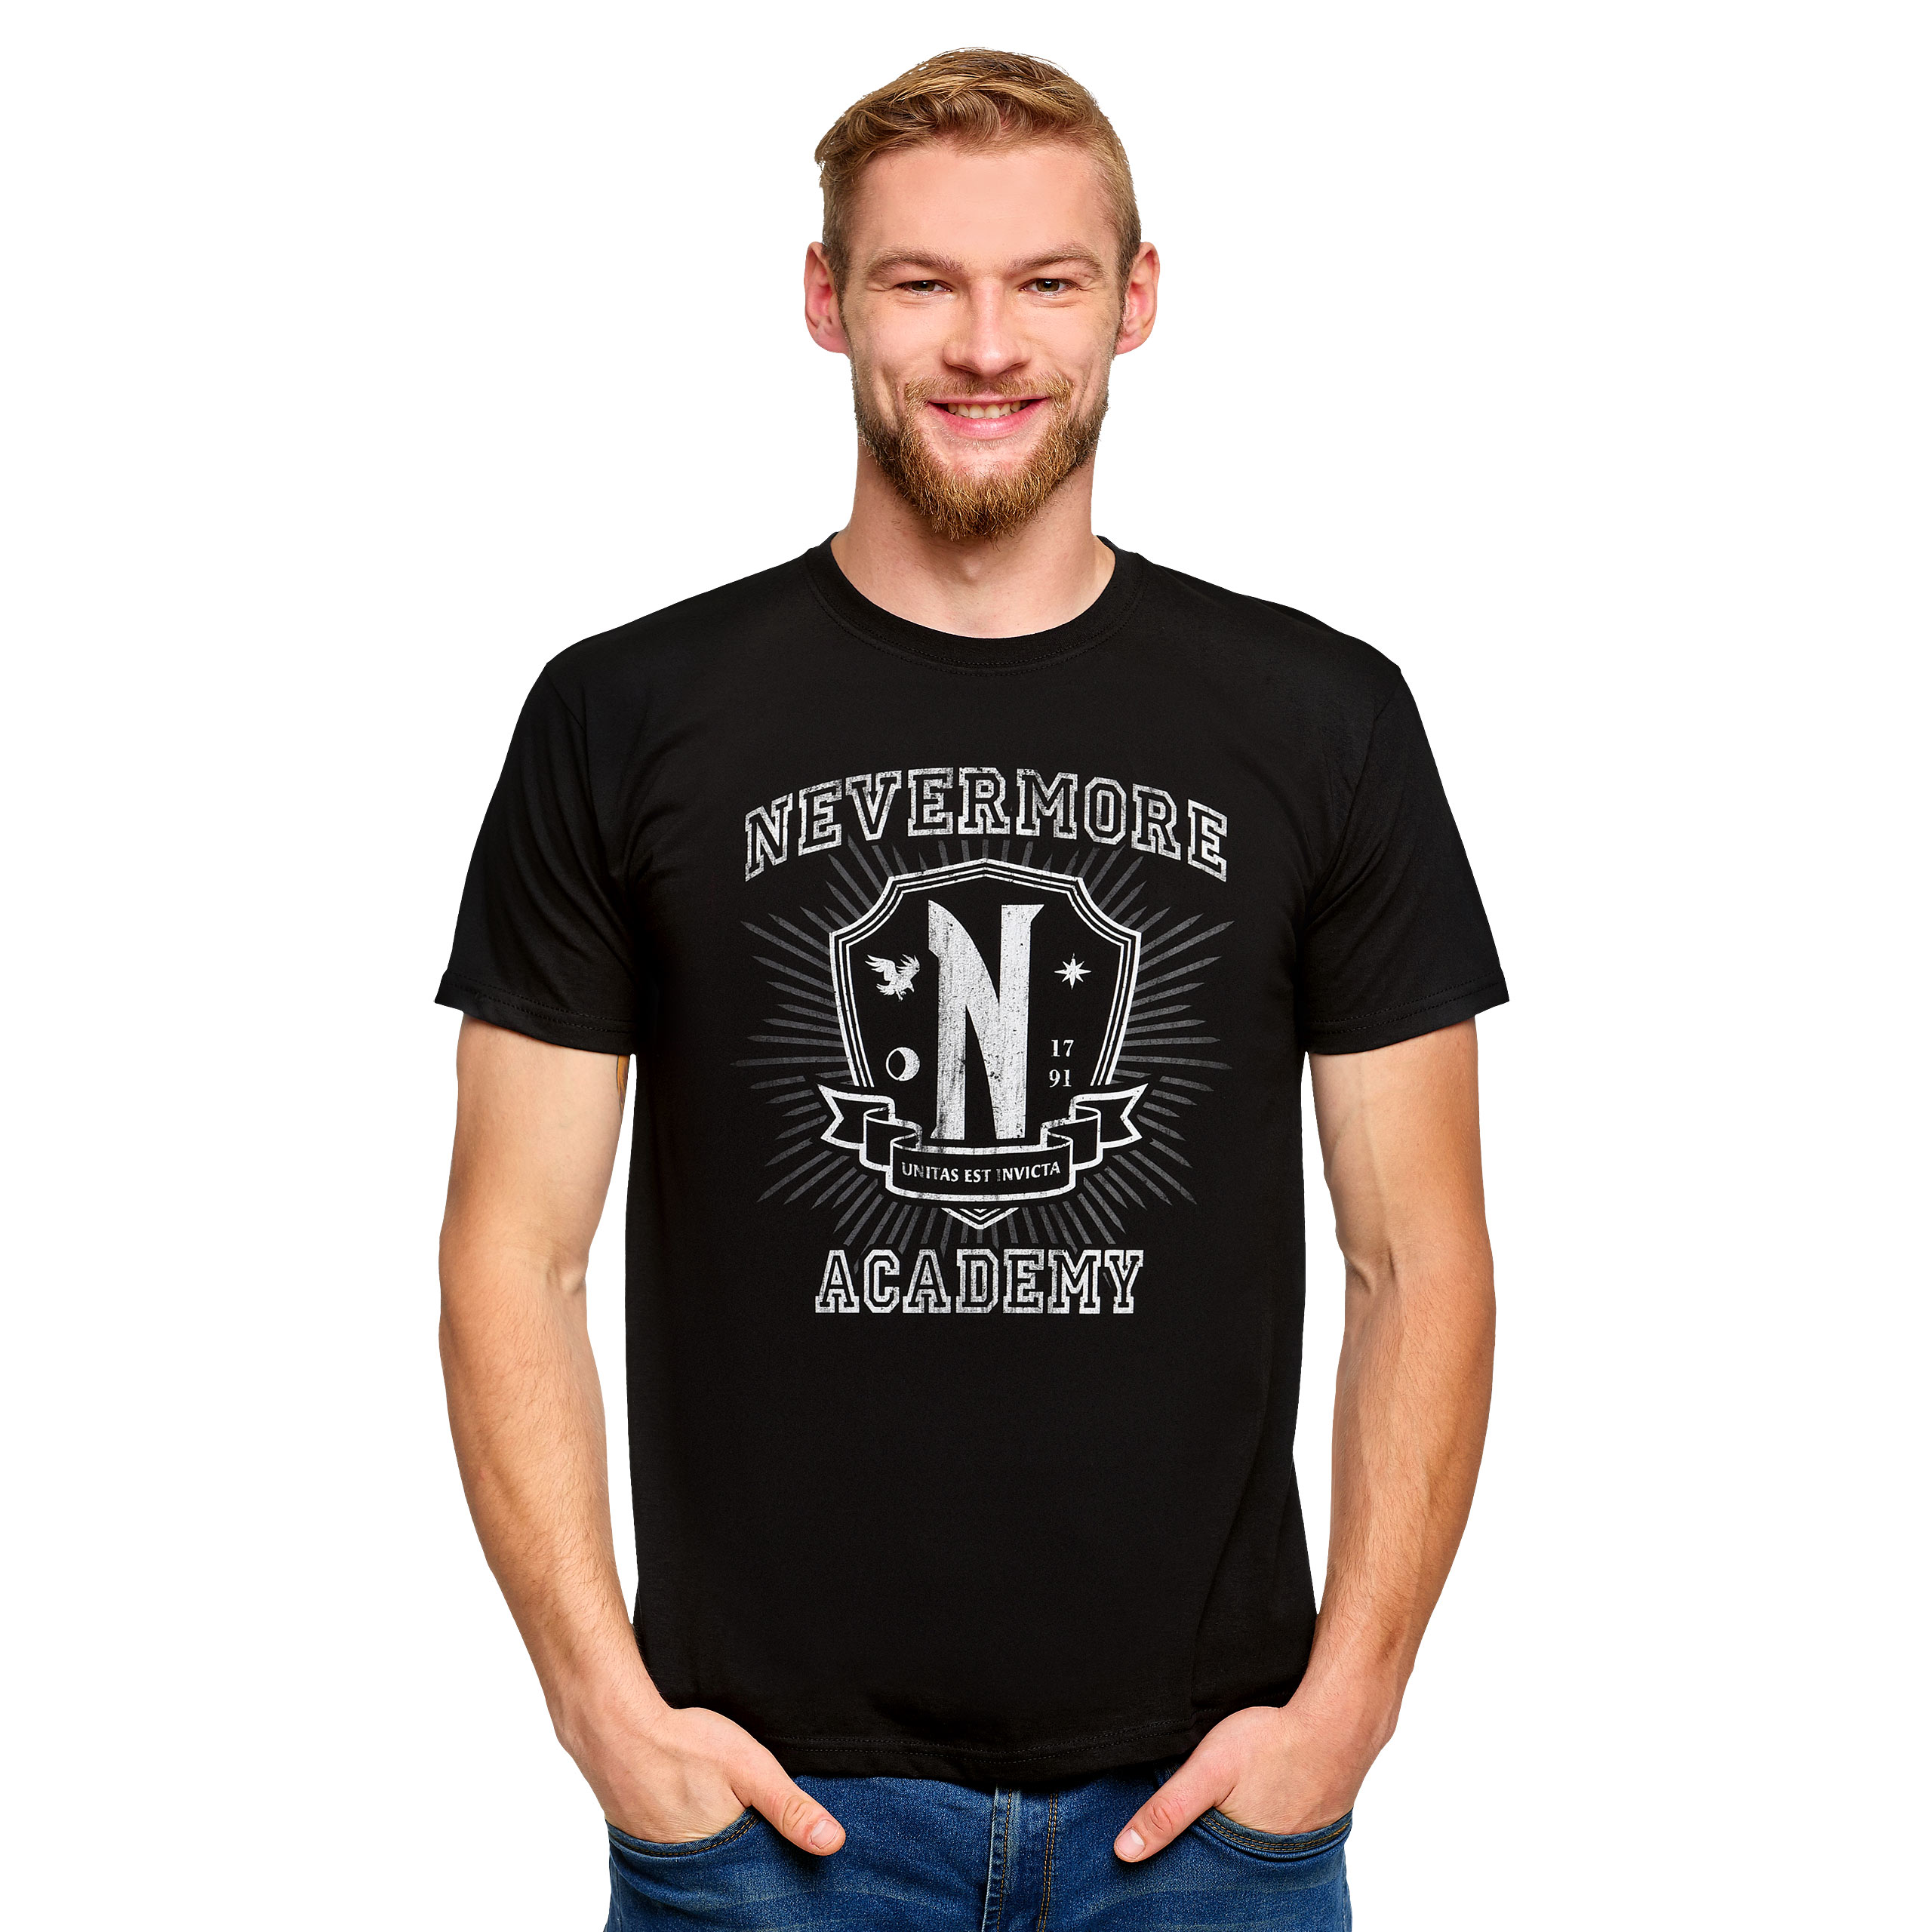 Mercredi - T-shirt noir de l'académie Nevermore